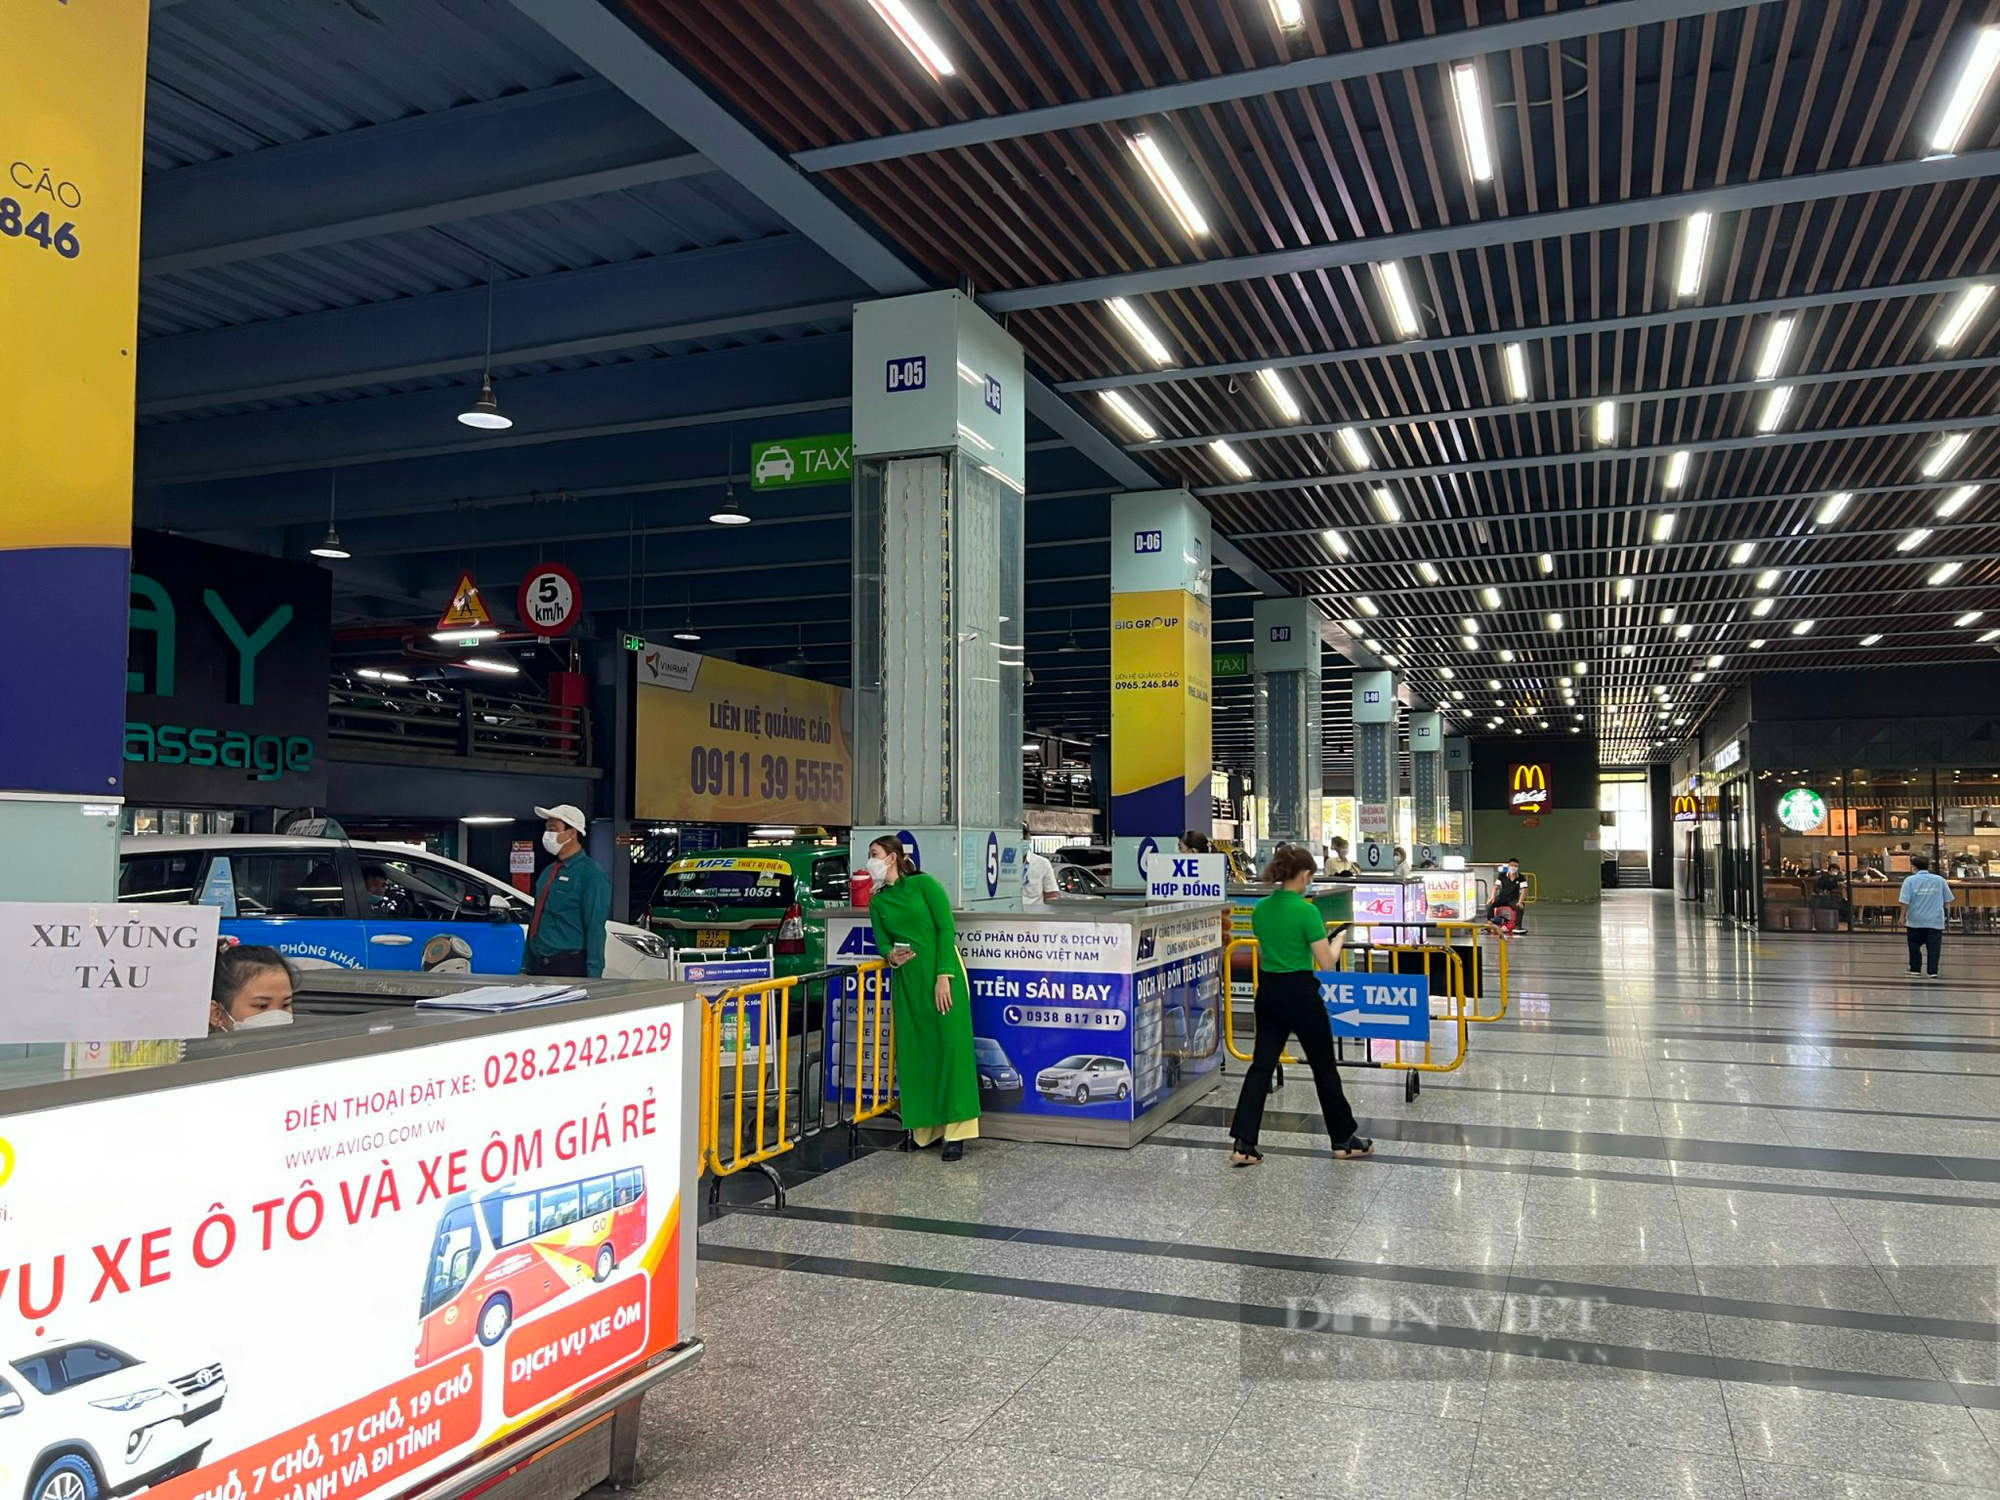 Sân bay Tân Sơn Nhất 'hạ nhiệt', dòng người thong thả rời đi - Ảnh 5.